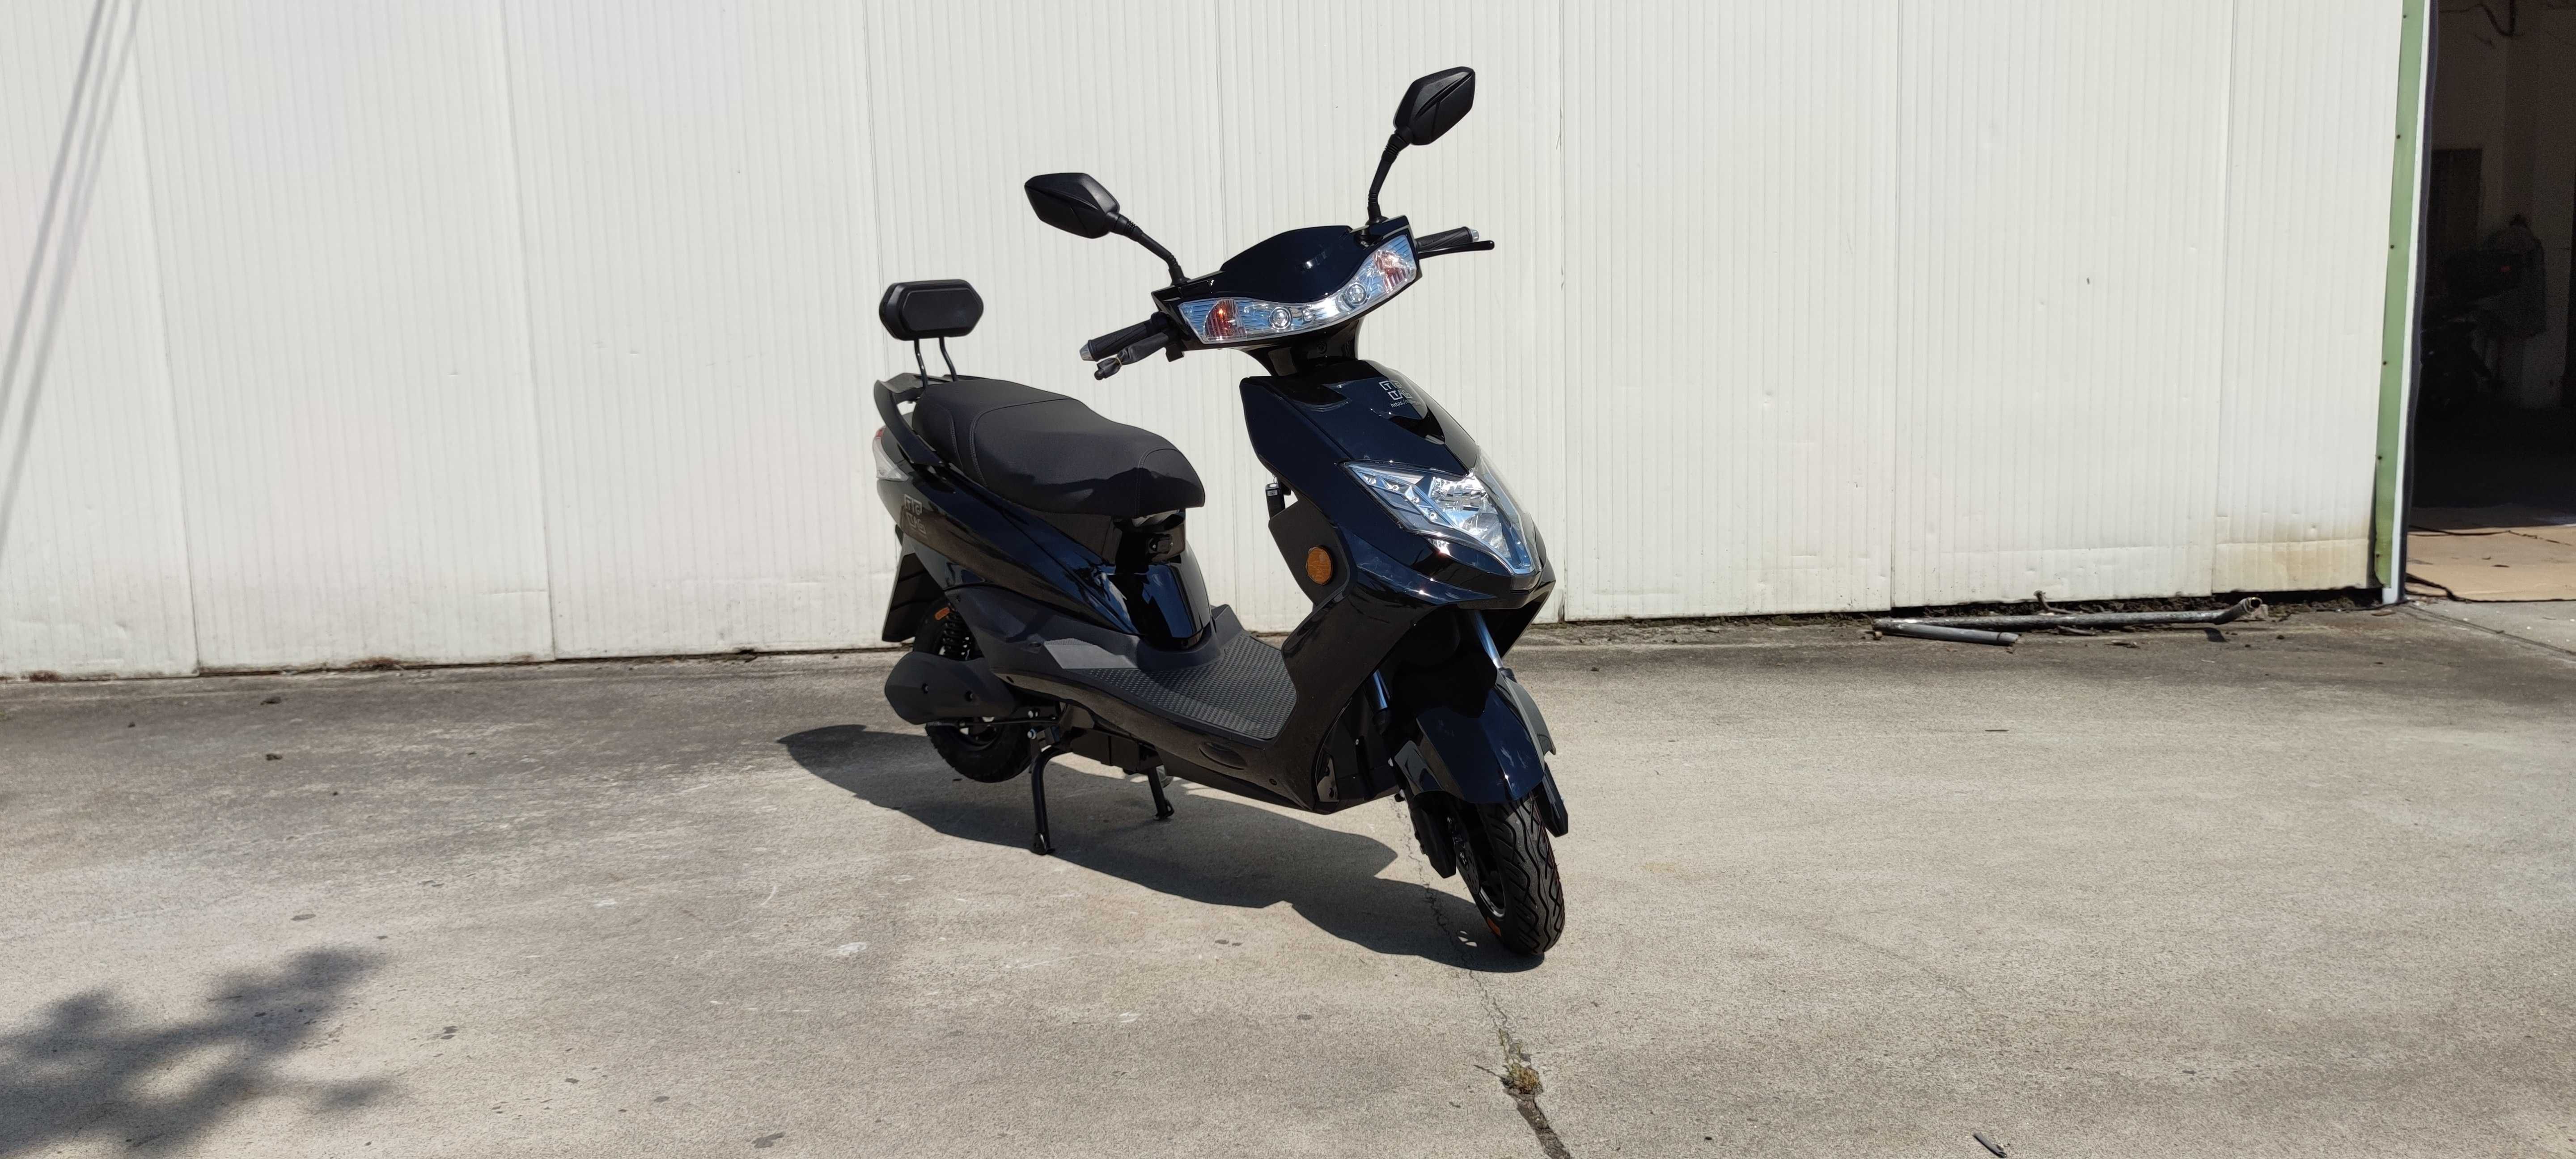 Електрически скутер My Force модел ЕМ006 син тъмно цвят с регистрация